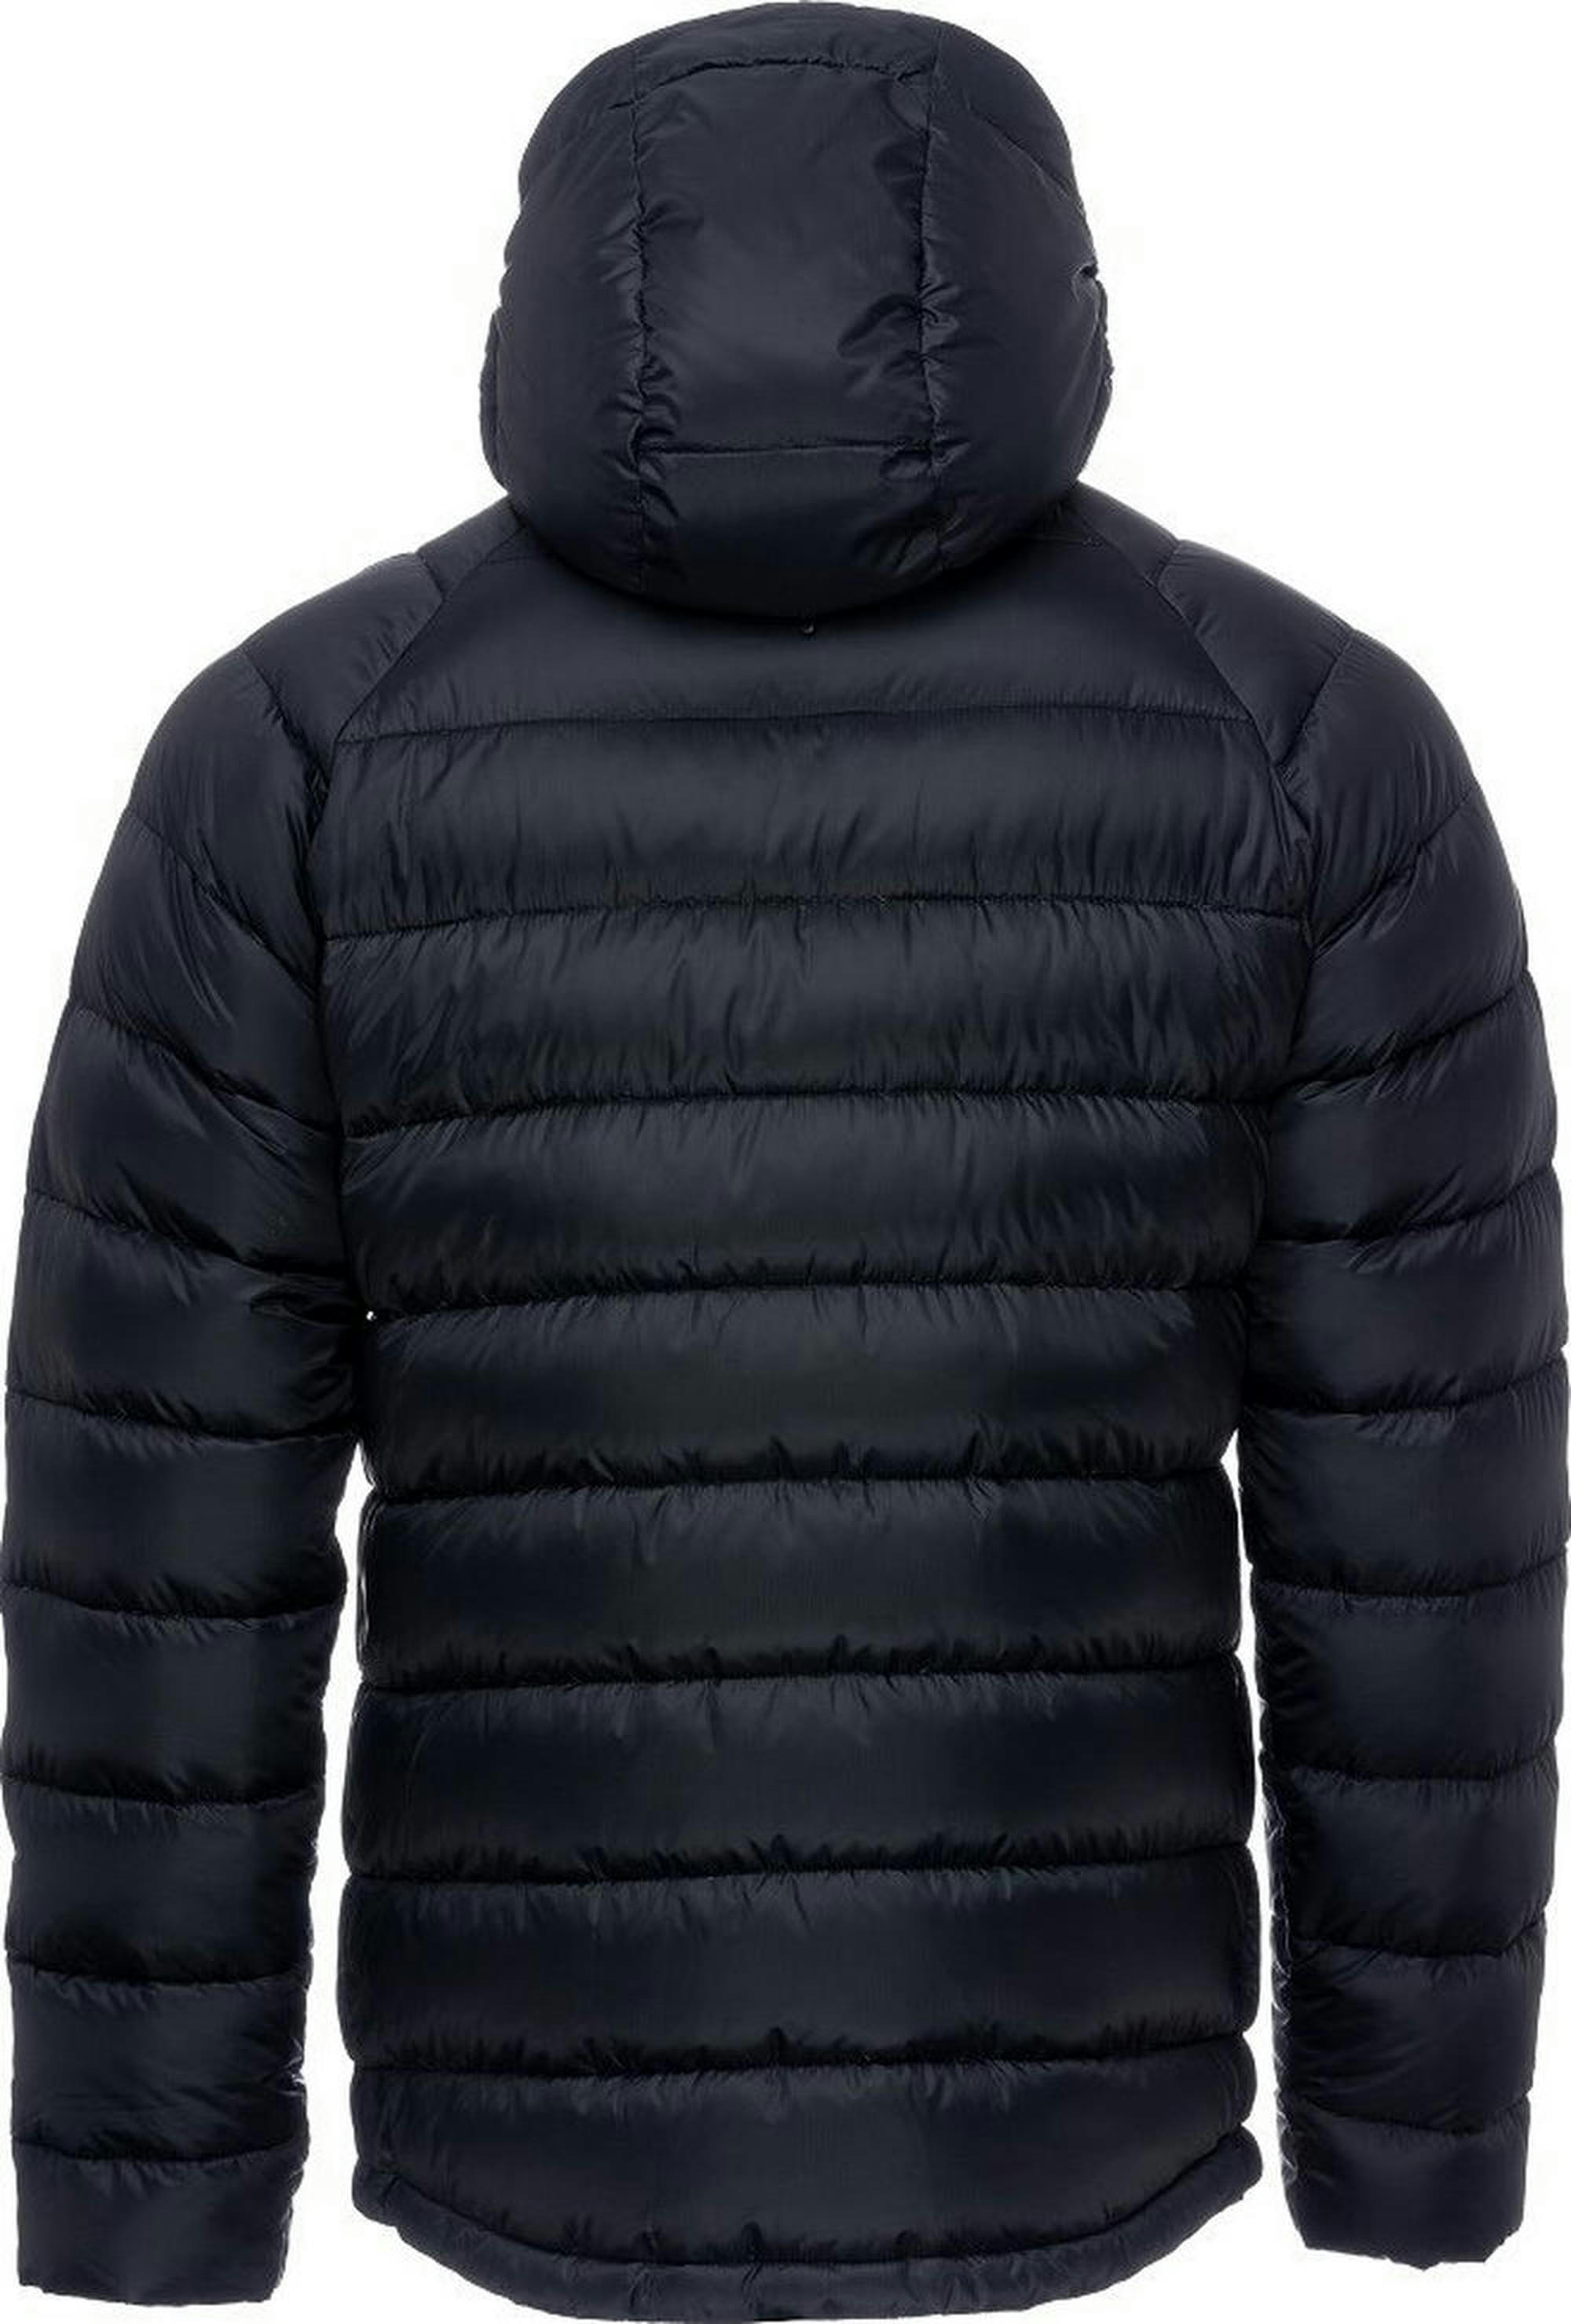 Куртка мужская Turbat Lofoten 2 Mns moonless night M черный фото 2